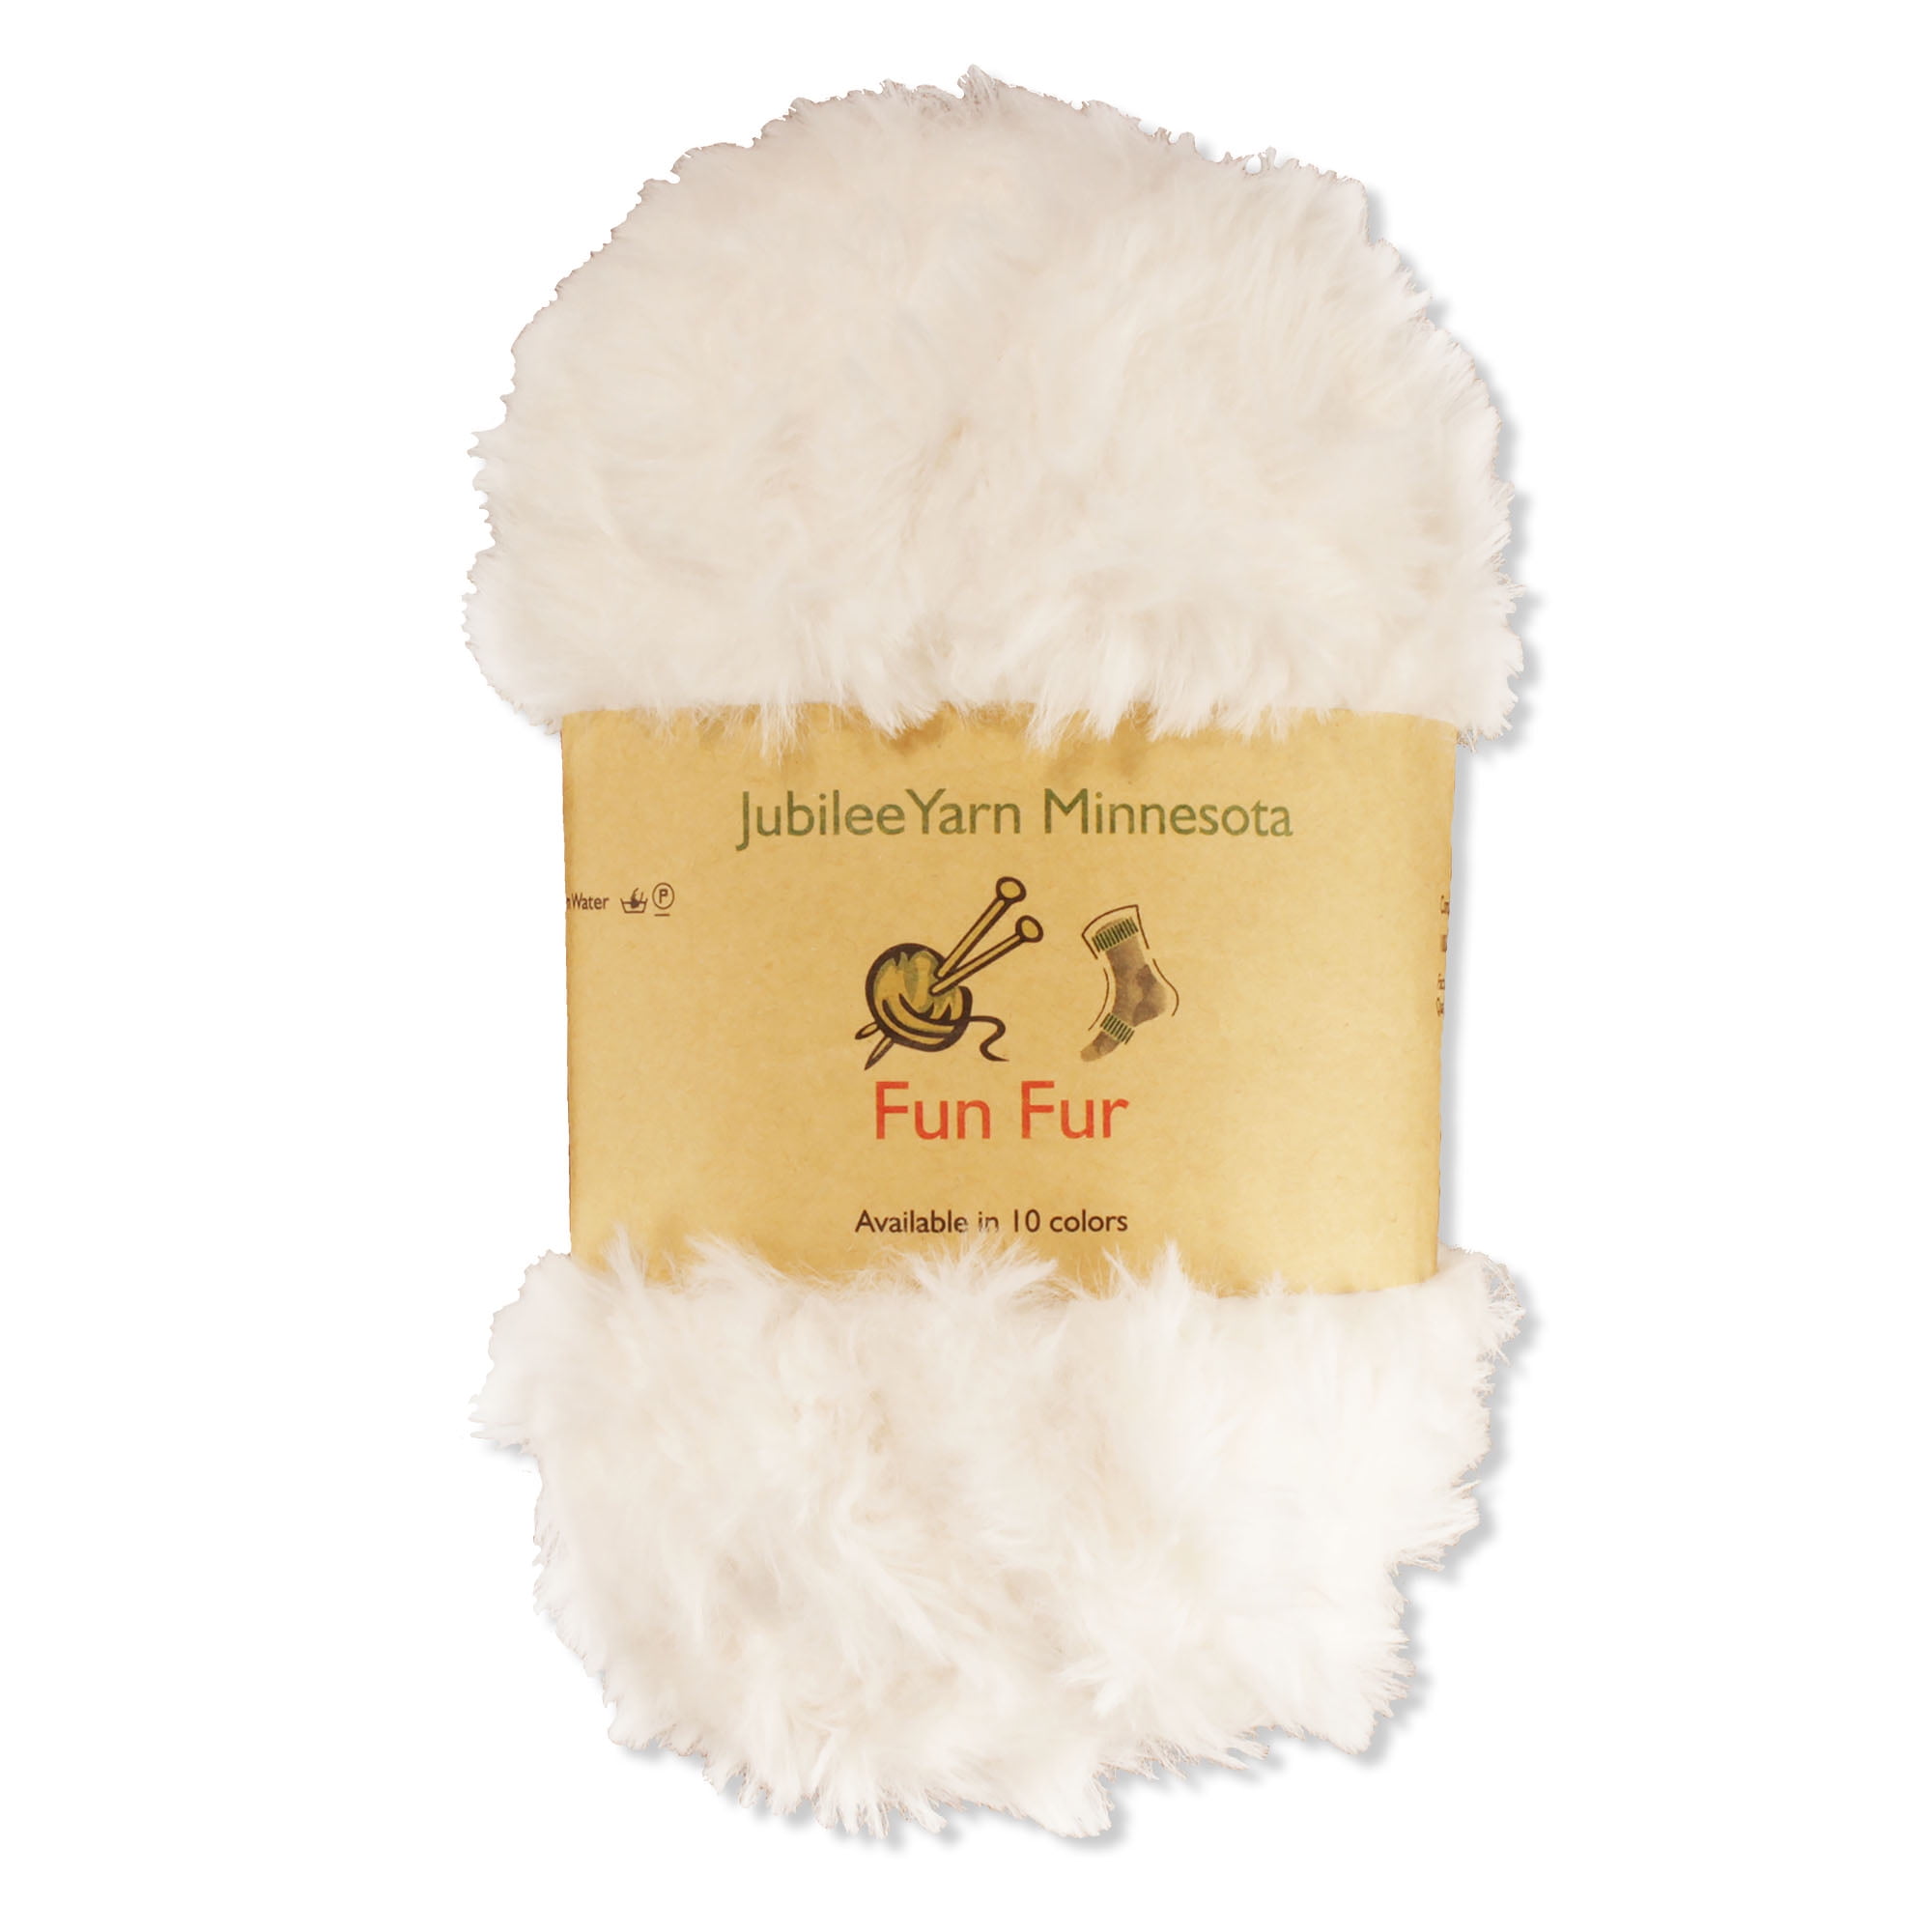 Fur Yarn Ultra Soft 50g One Skein 30m/32y Fluffy Yarn 100% Polyester Faux  Fur Yarn Fluffy Yarn Soft Yarn for Knitting 6 Weight 